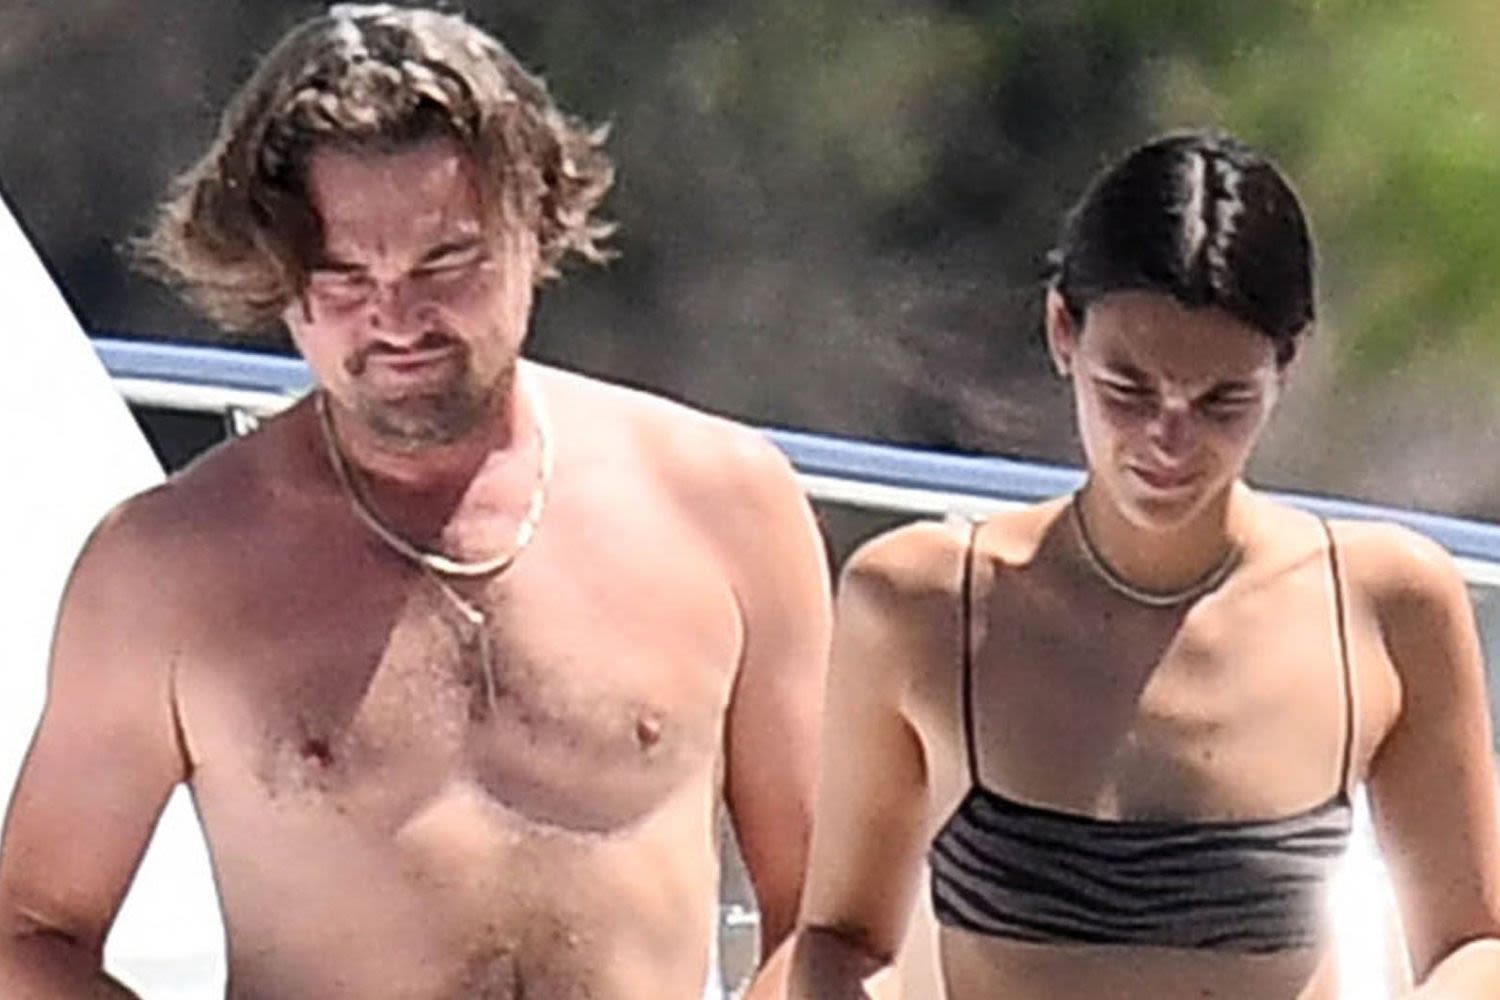 Leonardo DiCaprio and Girlfriend Vittoria Ceretti Soak Up the Sun on Yacht in Italy